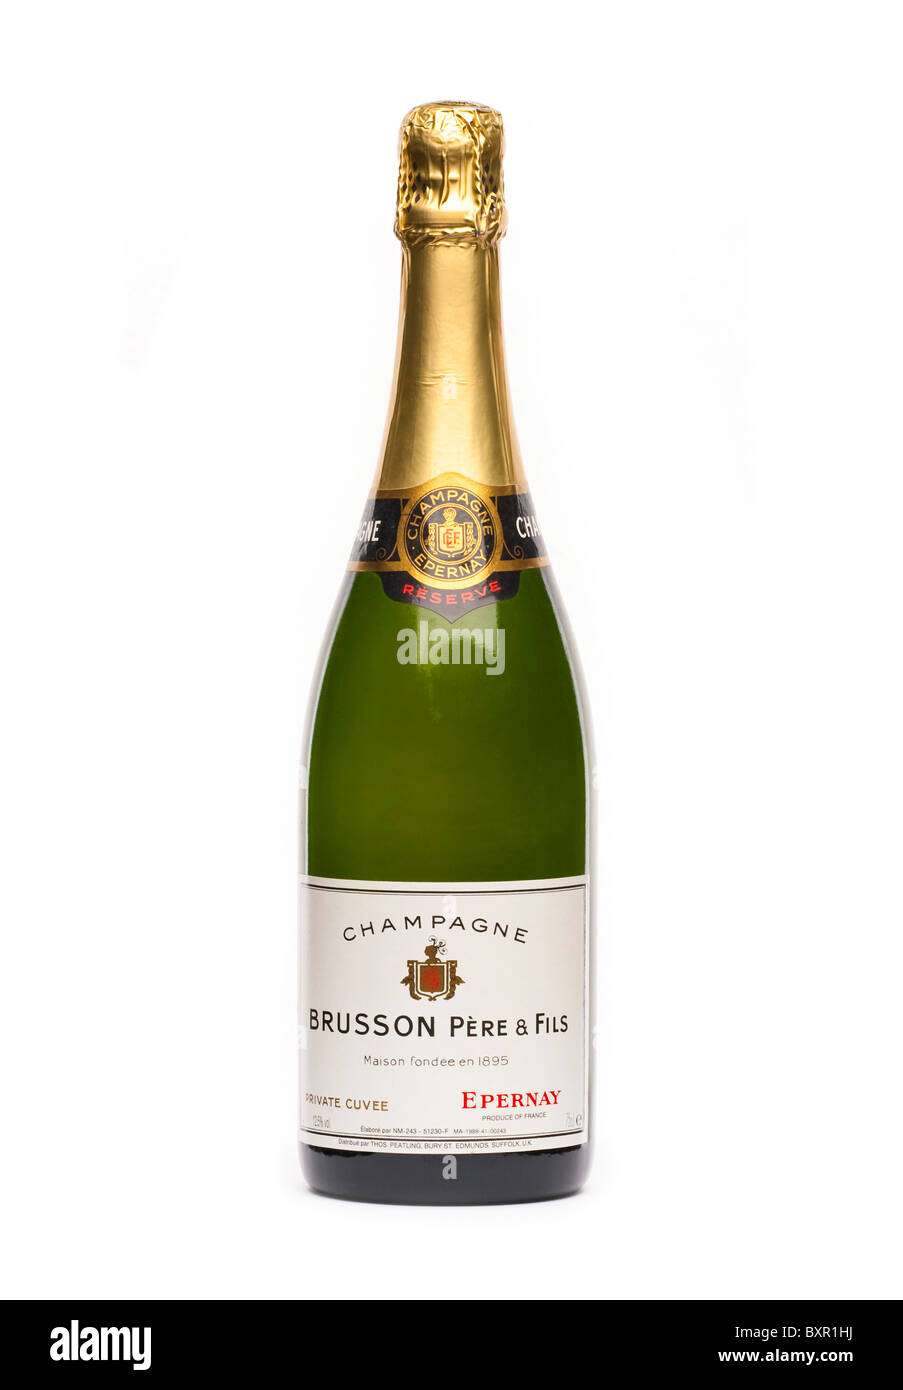 Bouteille de Champagne français Brusson Pere & Fils Epernay Banque D'Images